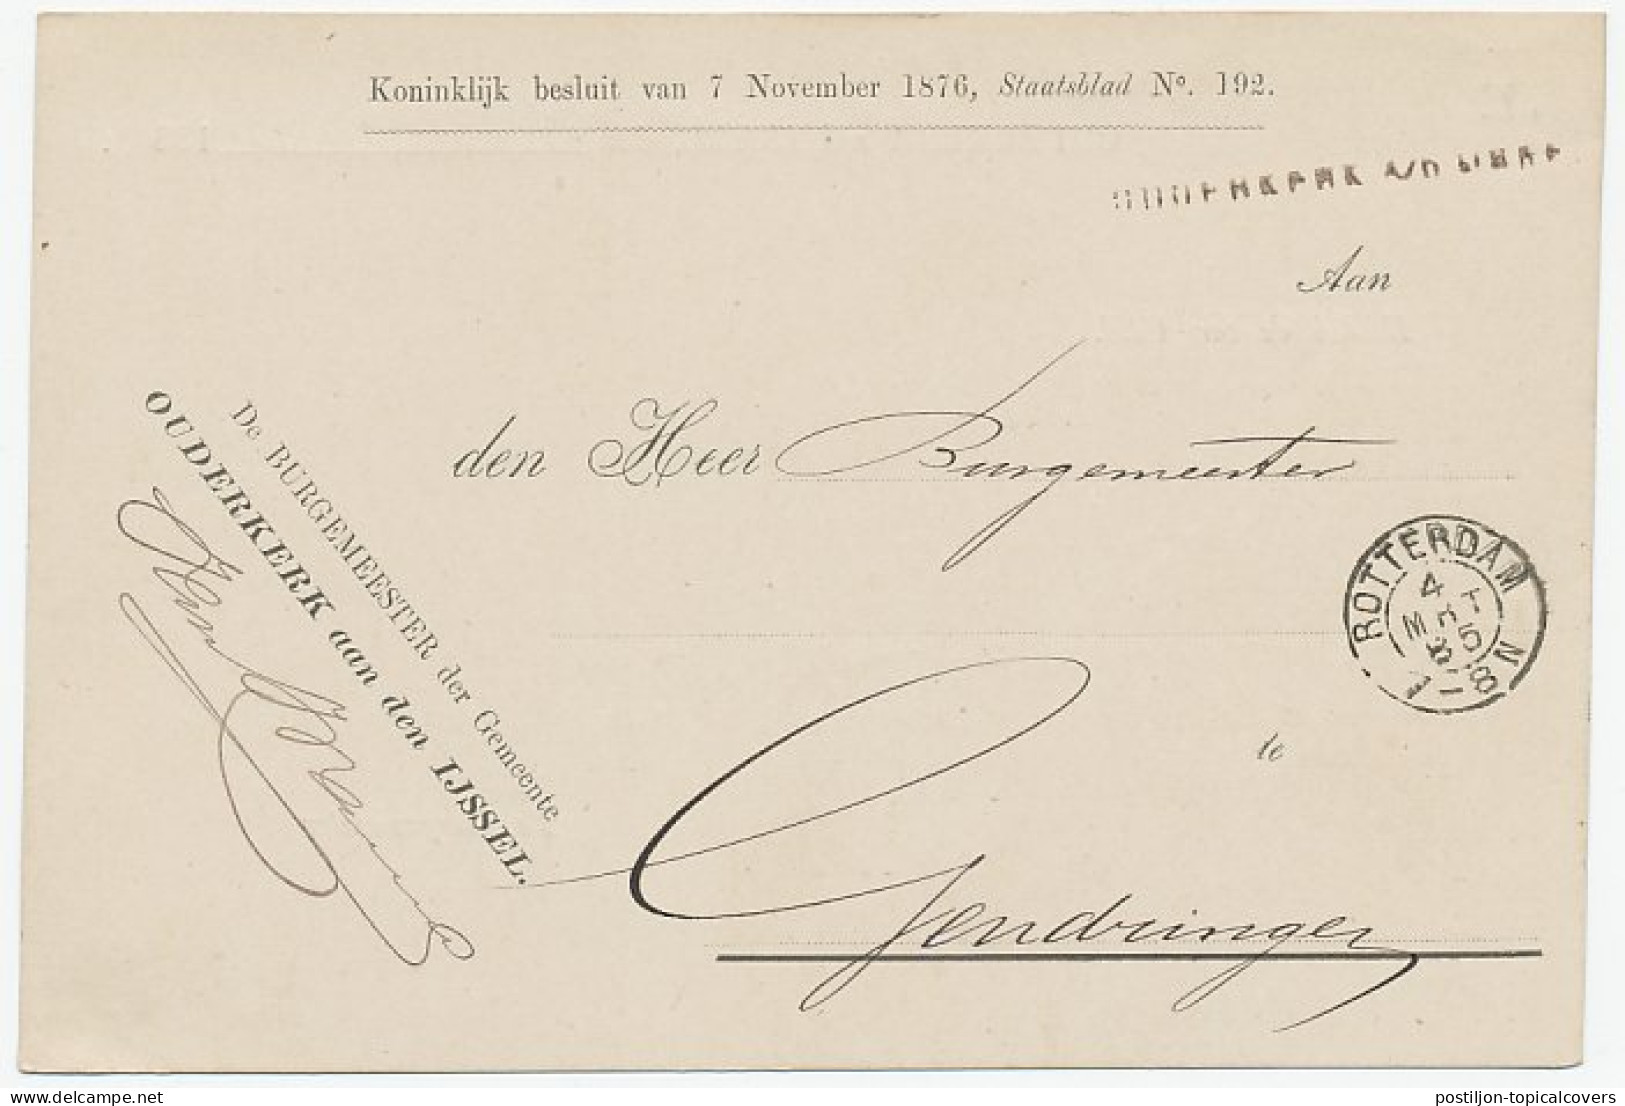 Naamstempel Ouderkerk A/D IJssel 1885 - Briefe U. Dokumente